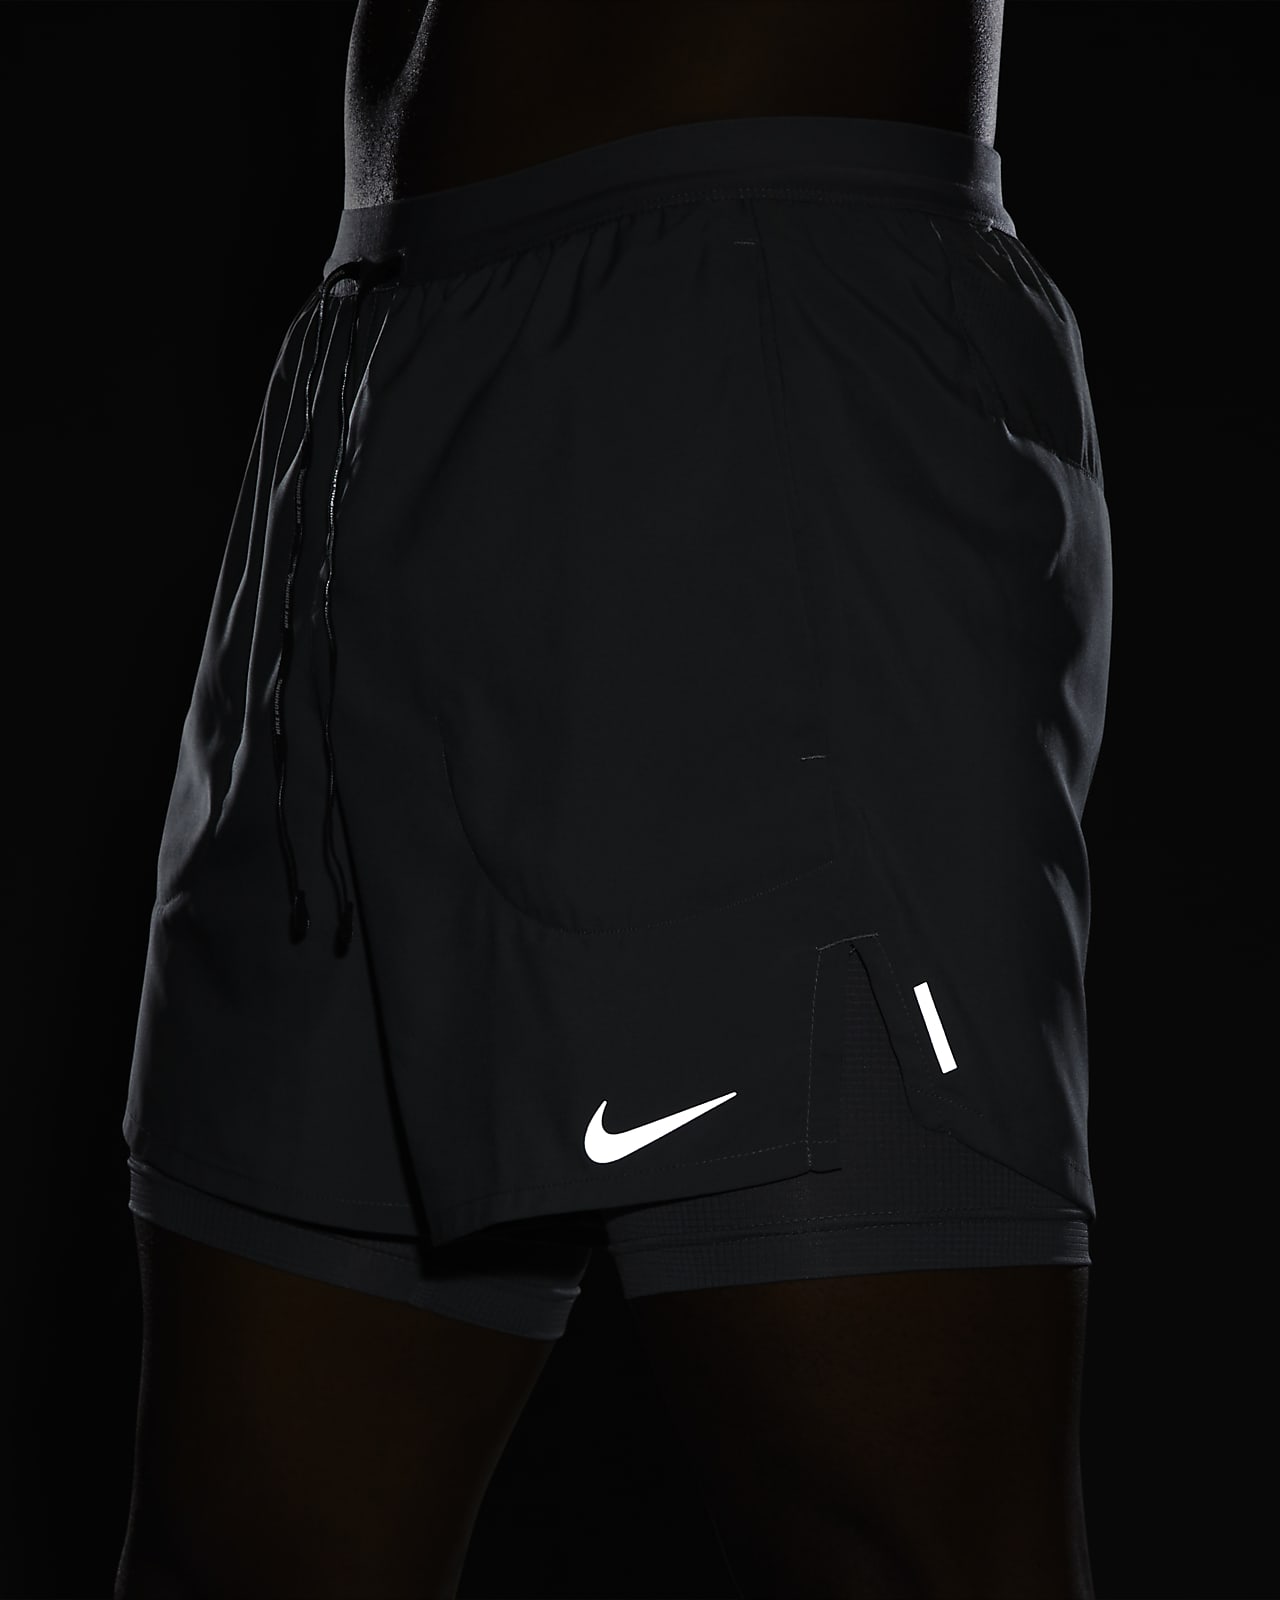 Nike Running Shorts, Pro Flex, 2 in 1